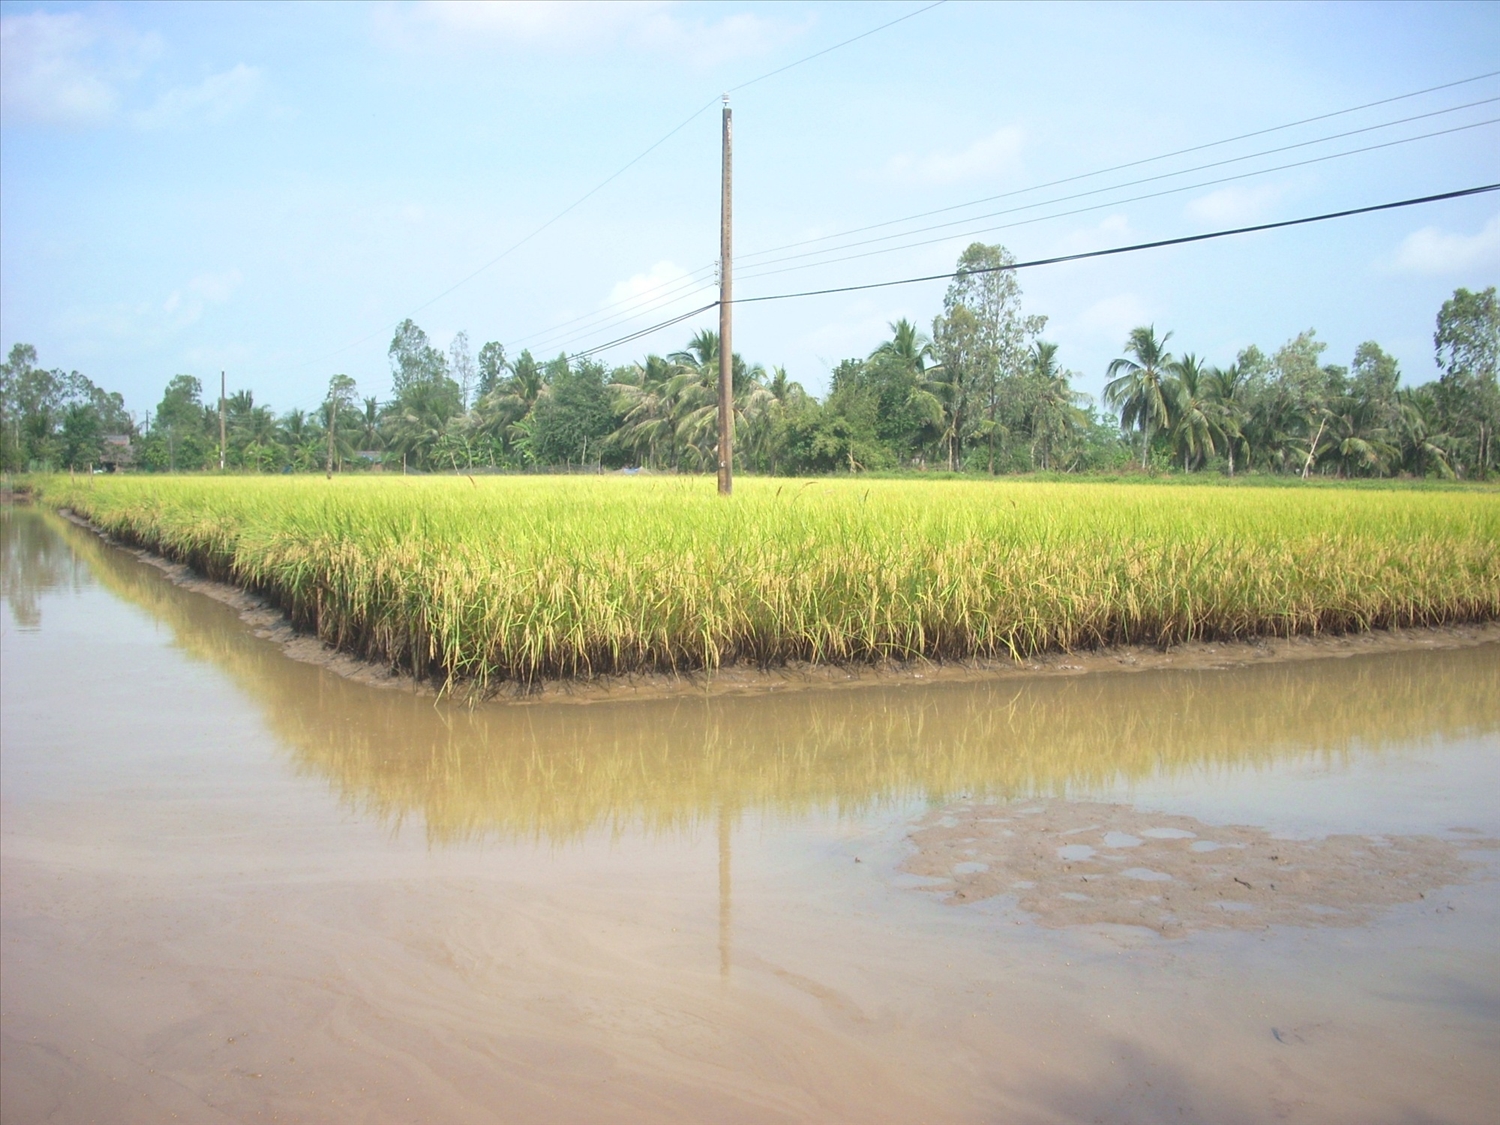 Các tỉnh ven biển ĐBSCL đang phát triển mạnh mô hình sản xuất lúa giống ST24, ST25 kết hợp nuôi tôm mang lại hiệu quả bền vững.